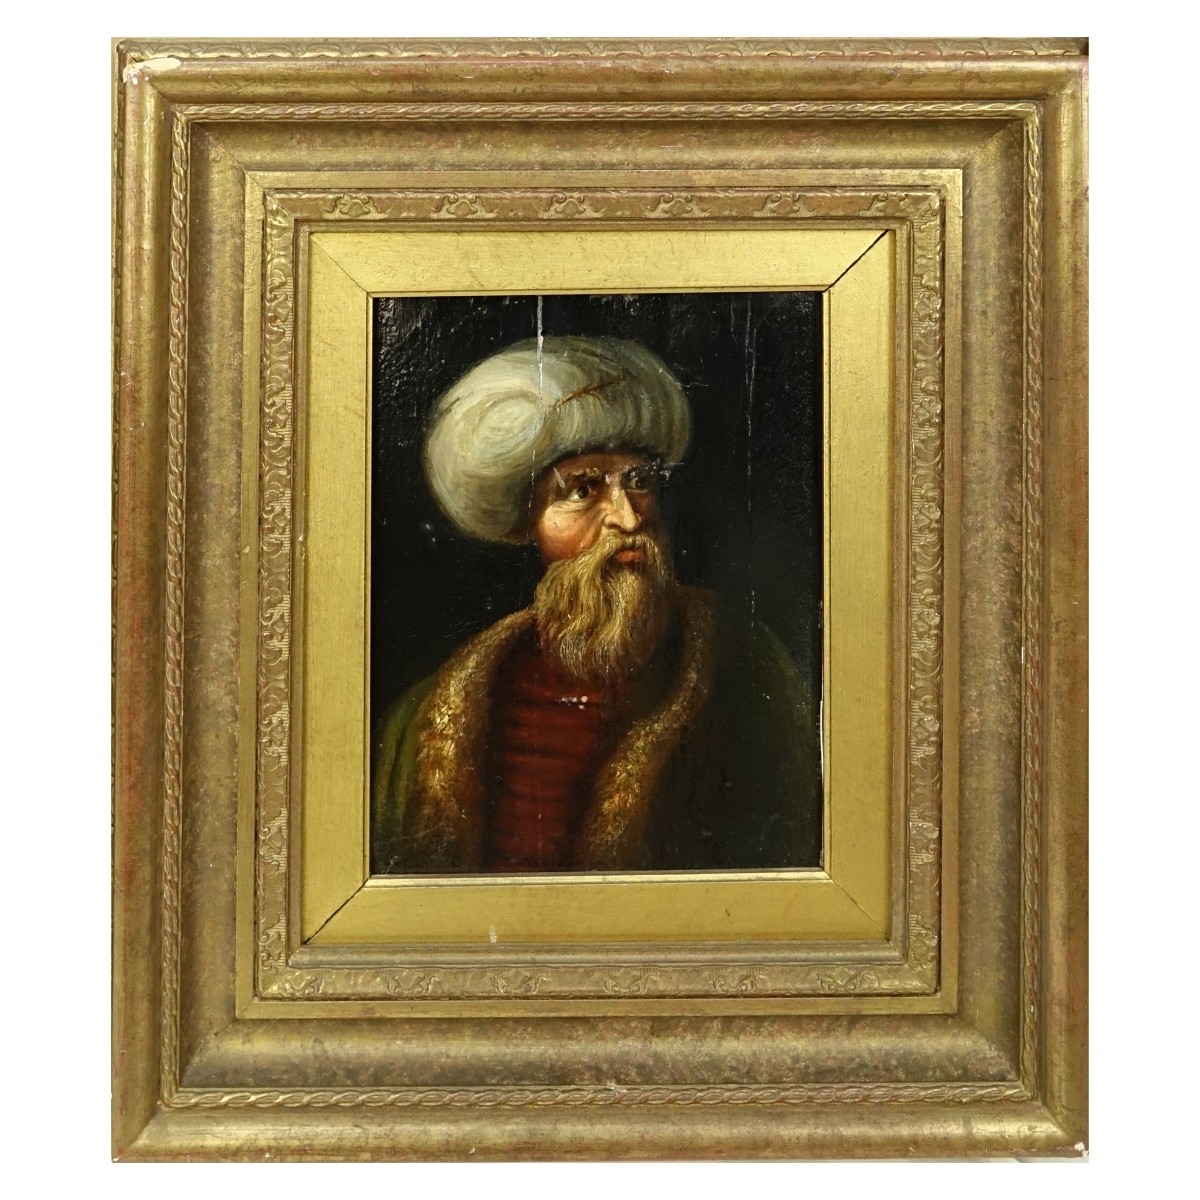 Early Orientalist School Oil on Panel "Portrait"